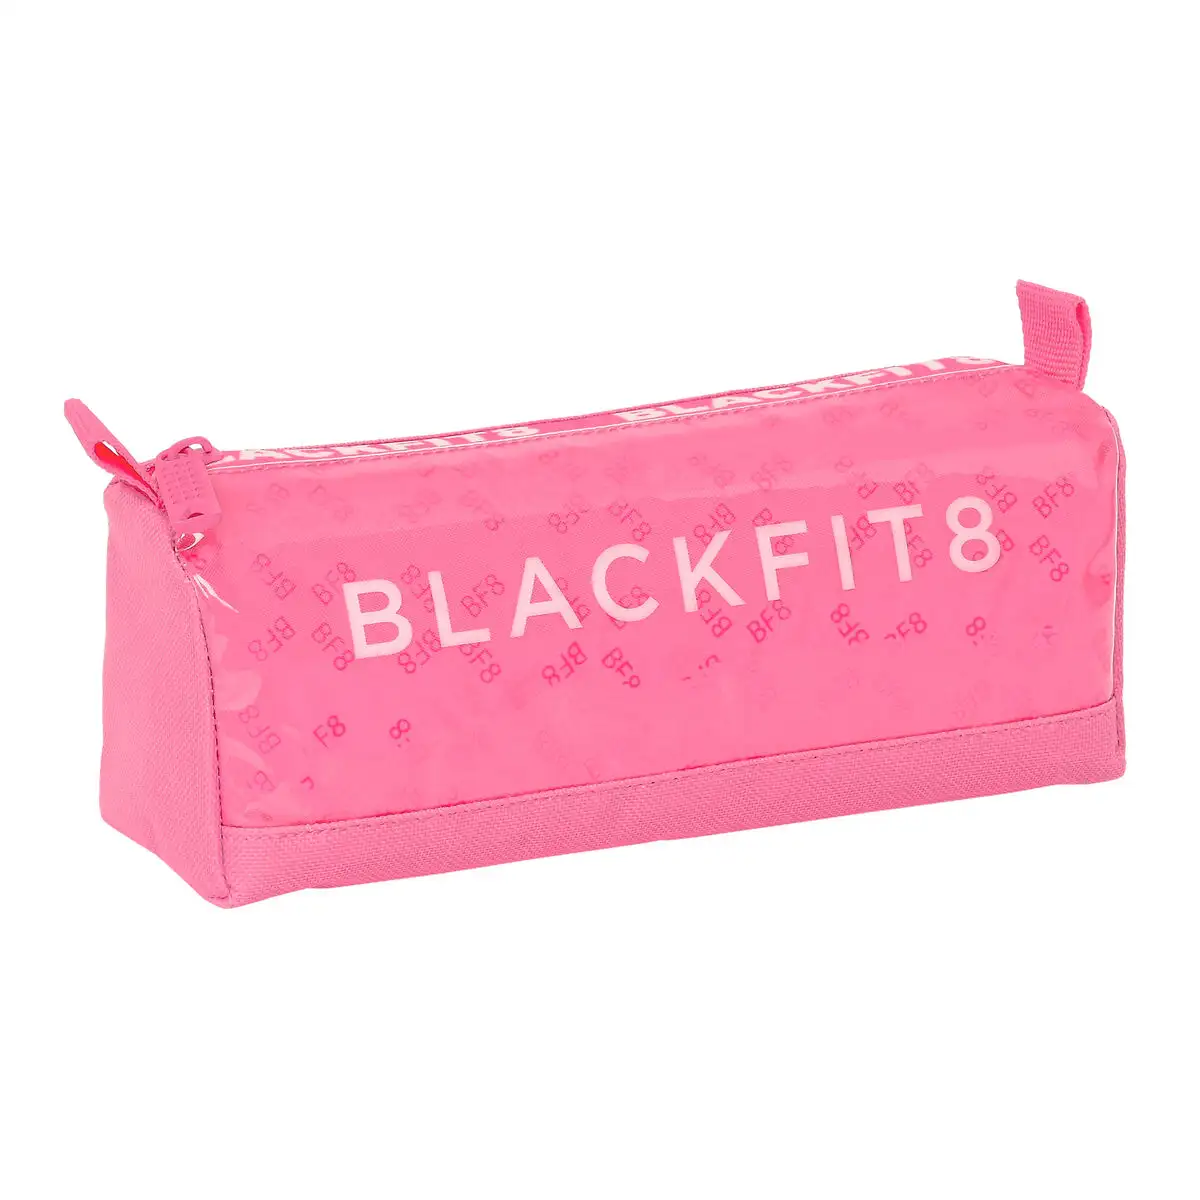 Trousse d ecolier blackfit8 glow up rose 21 x 8 x 7 cm _3125. DIAYTAR SENEGAL - Votre Plaisir Shopping à Portée de Clic. Explorez notre boutique en ligne et trouvez des produits qui ajoutent une touche de bonheur à votre vie quotidienne.